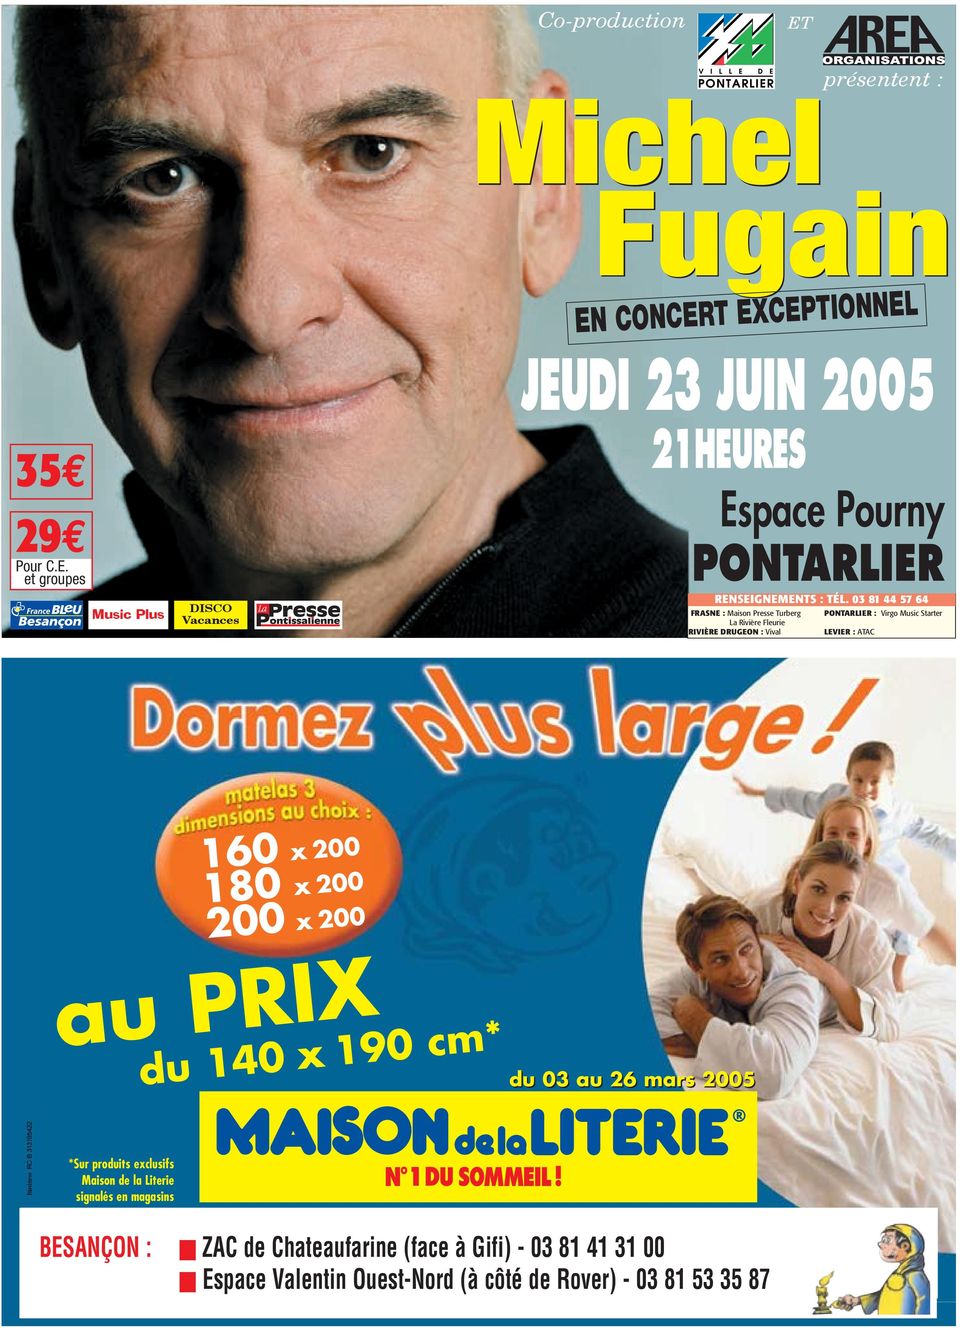 et groupes Music Plus DISCO Vacances présentent : Michel Fugain EN CONCERT EXCEPTIONNEL JEUDI 23 JUIN 2005 21HEURES Espace Pourny RENSEIGNEMENTS :